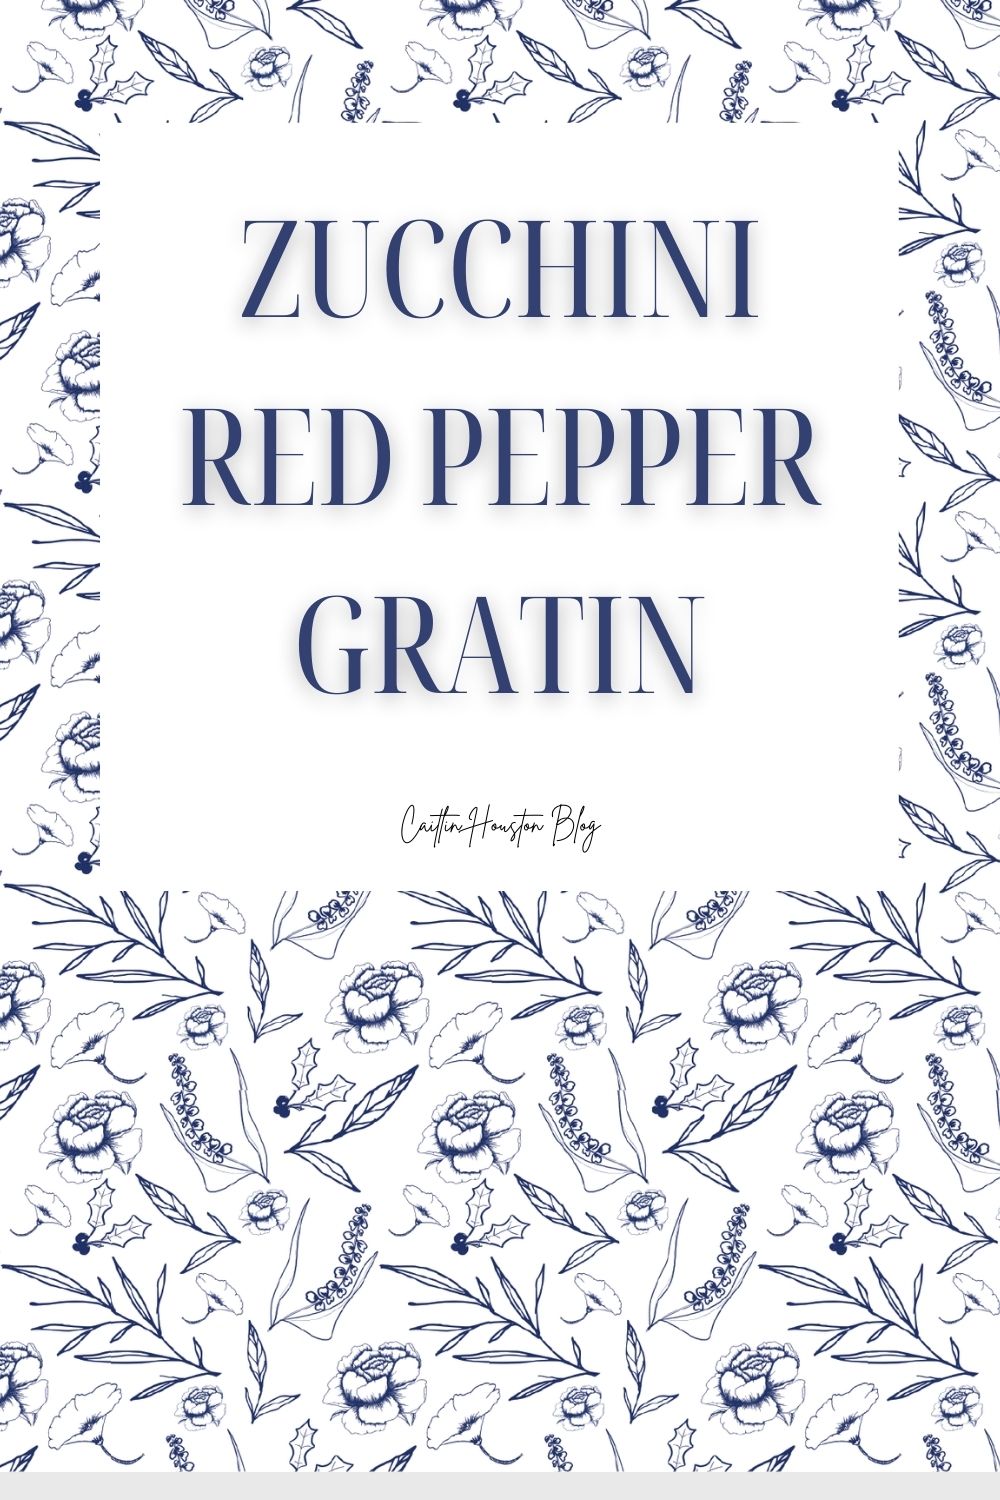 Zucchini Red Pepper Gratin